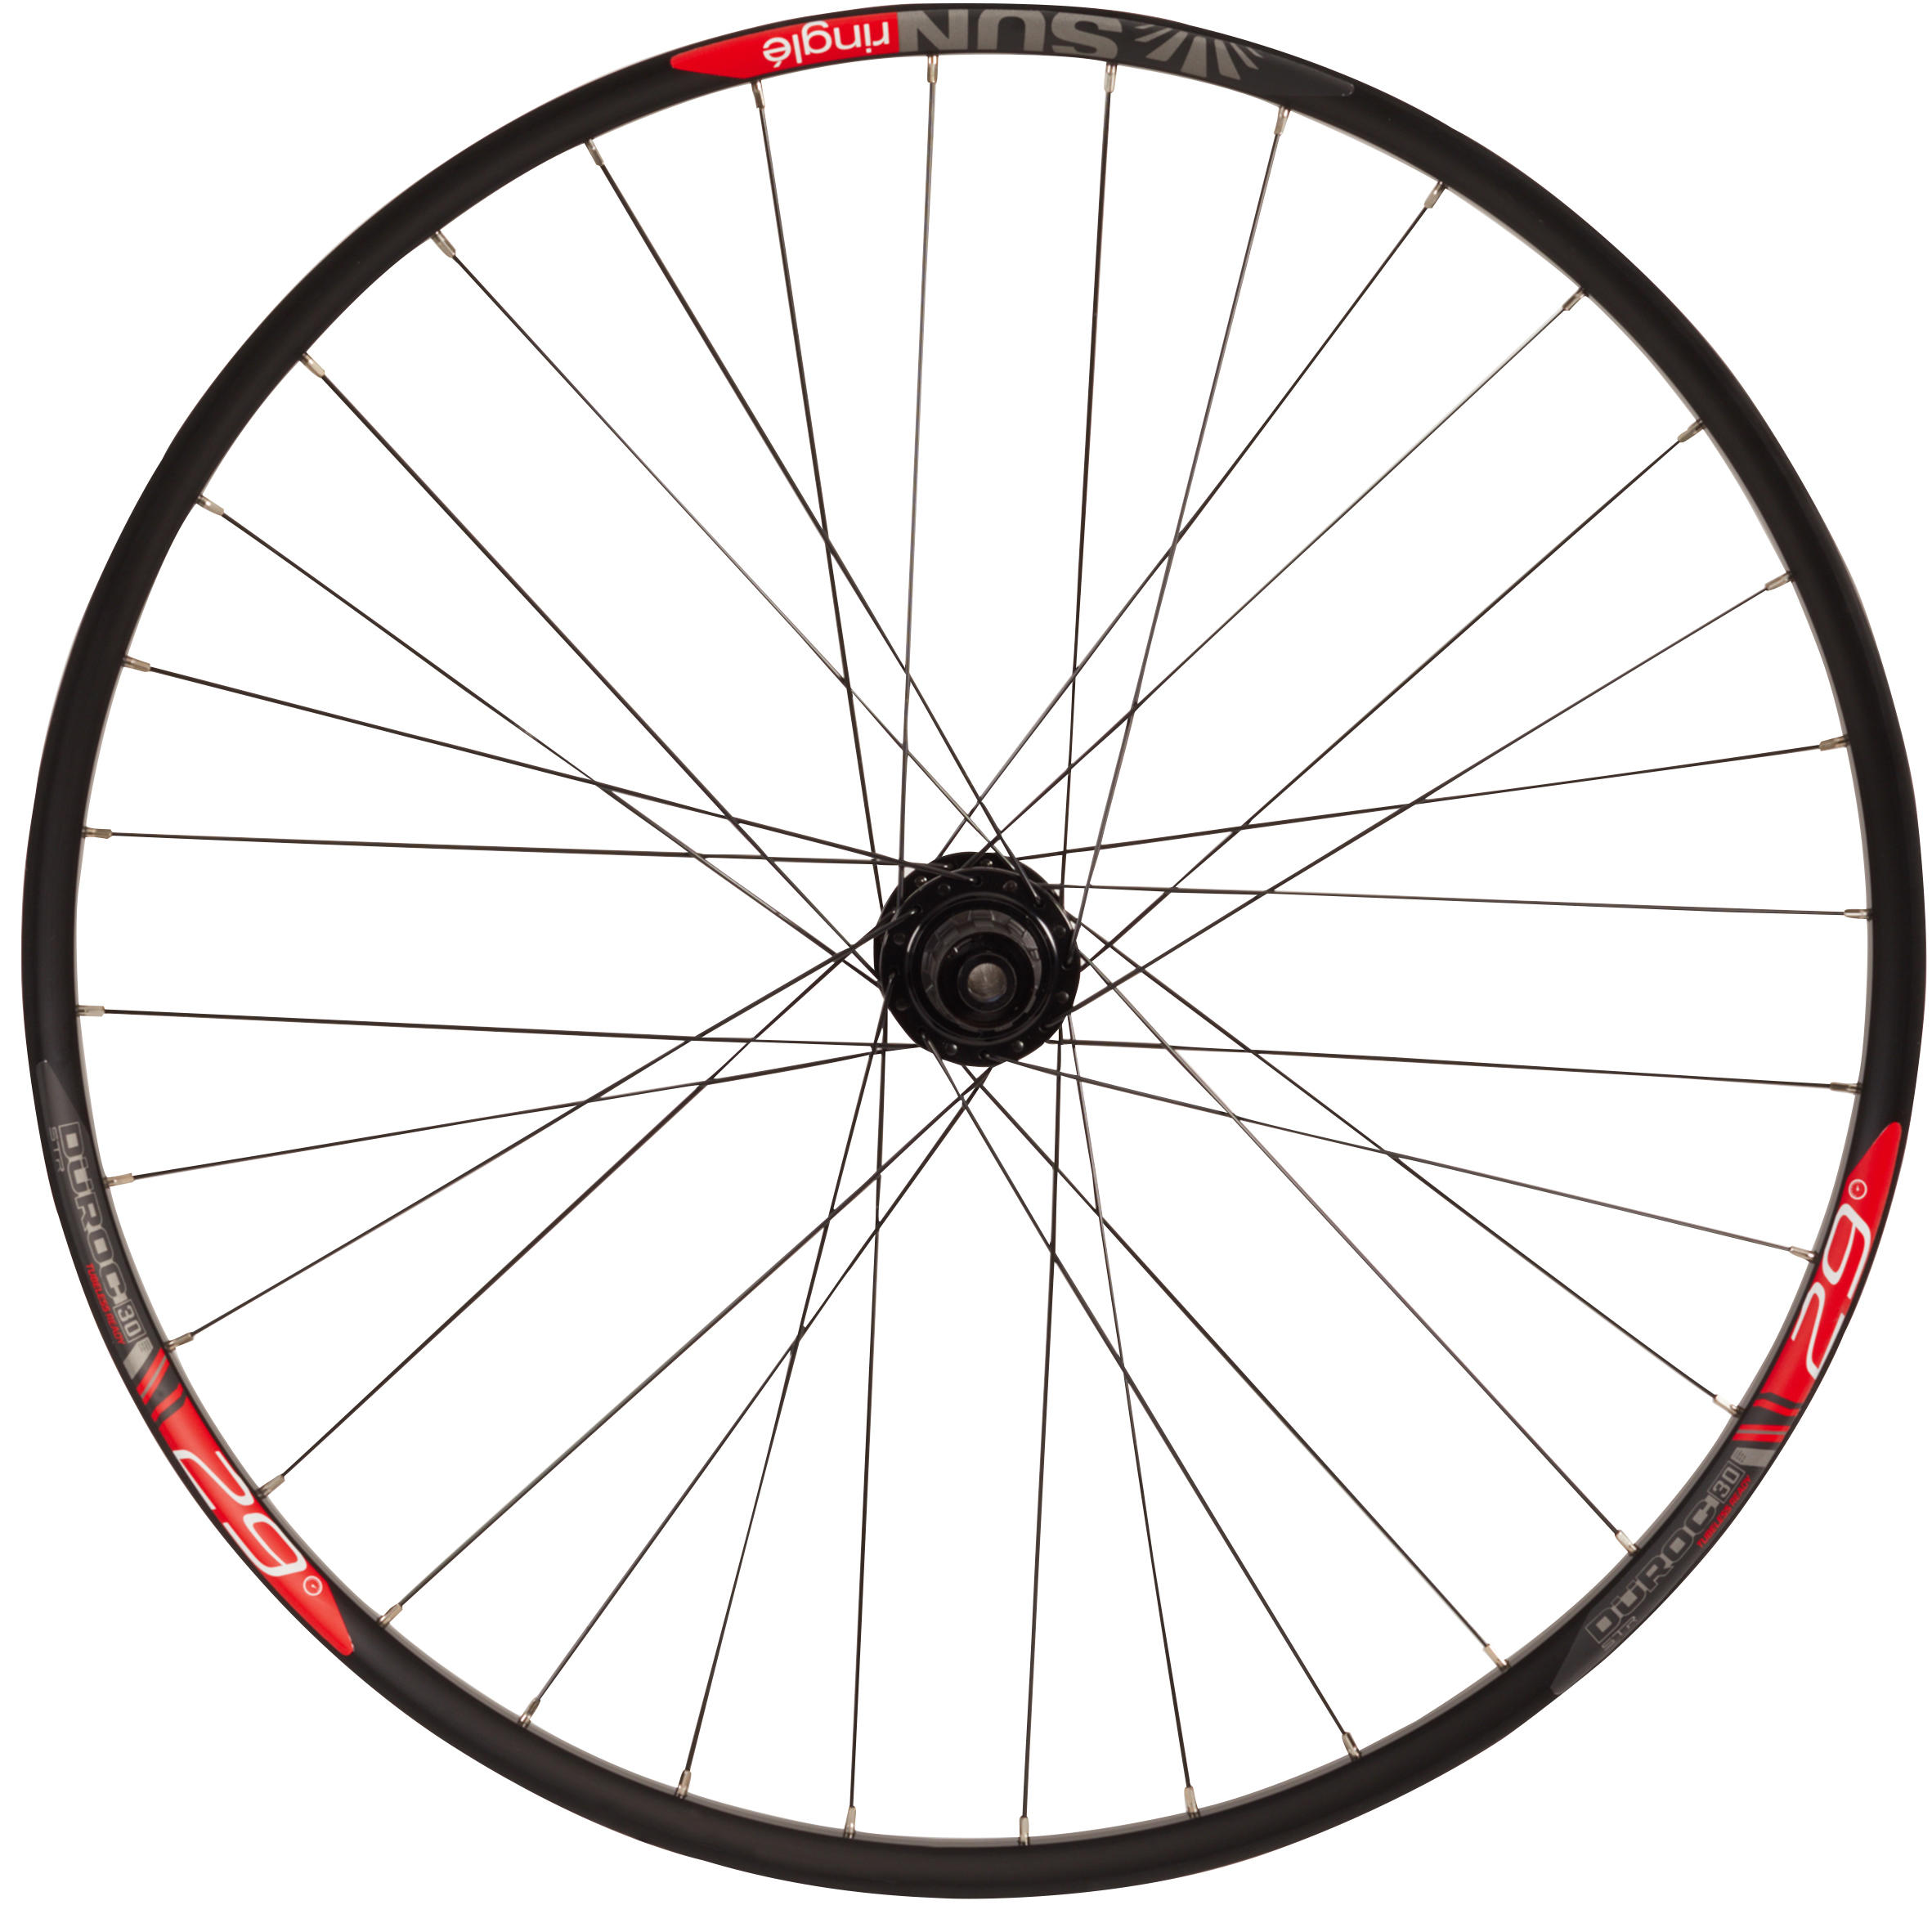 Mountain Bike Rear Wheel 29" Double Wall Cassette Disc Boost 12x148 Duroc 30 1/4